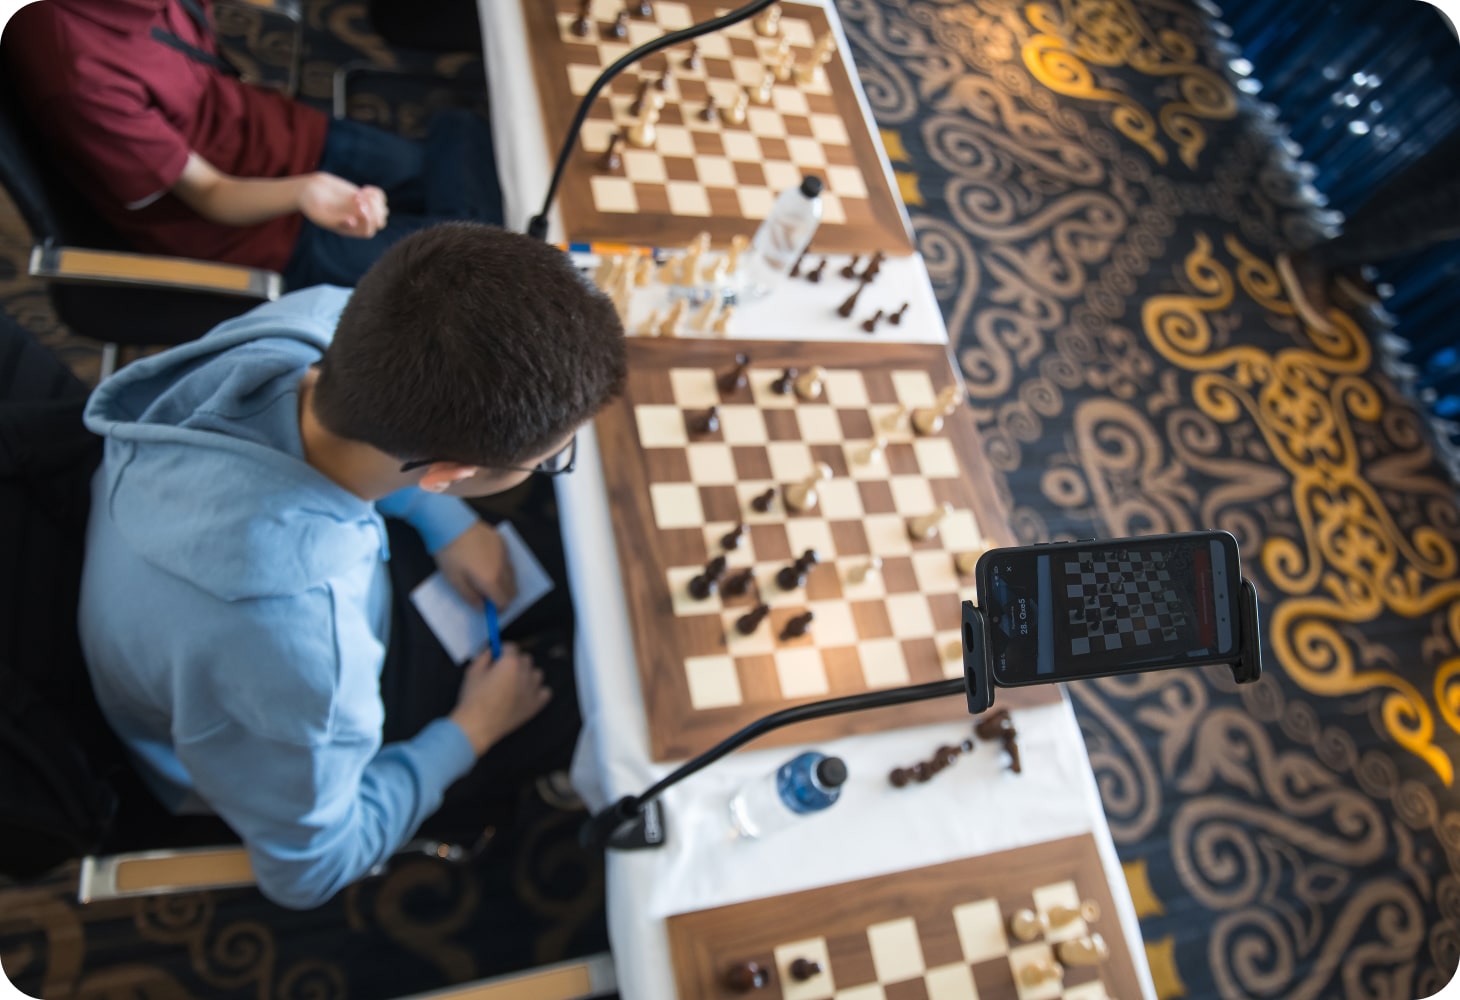 ⚡️В Астане прошел сеанс международного гроссмейстера Данила Дубова. 20  ребят смогли сразиться известным шахматистом. Все партии…